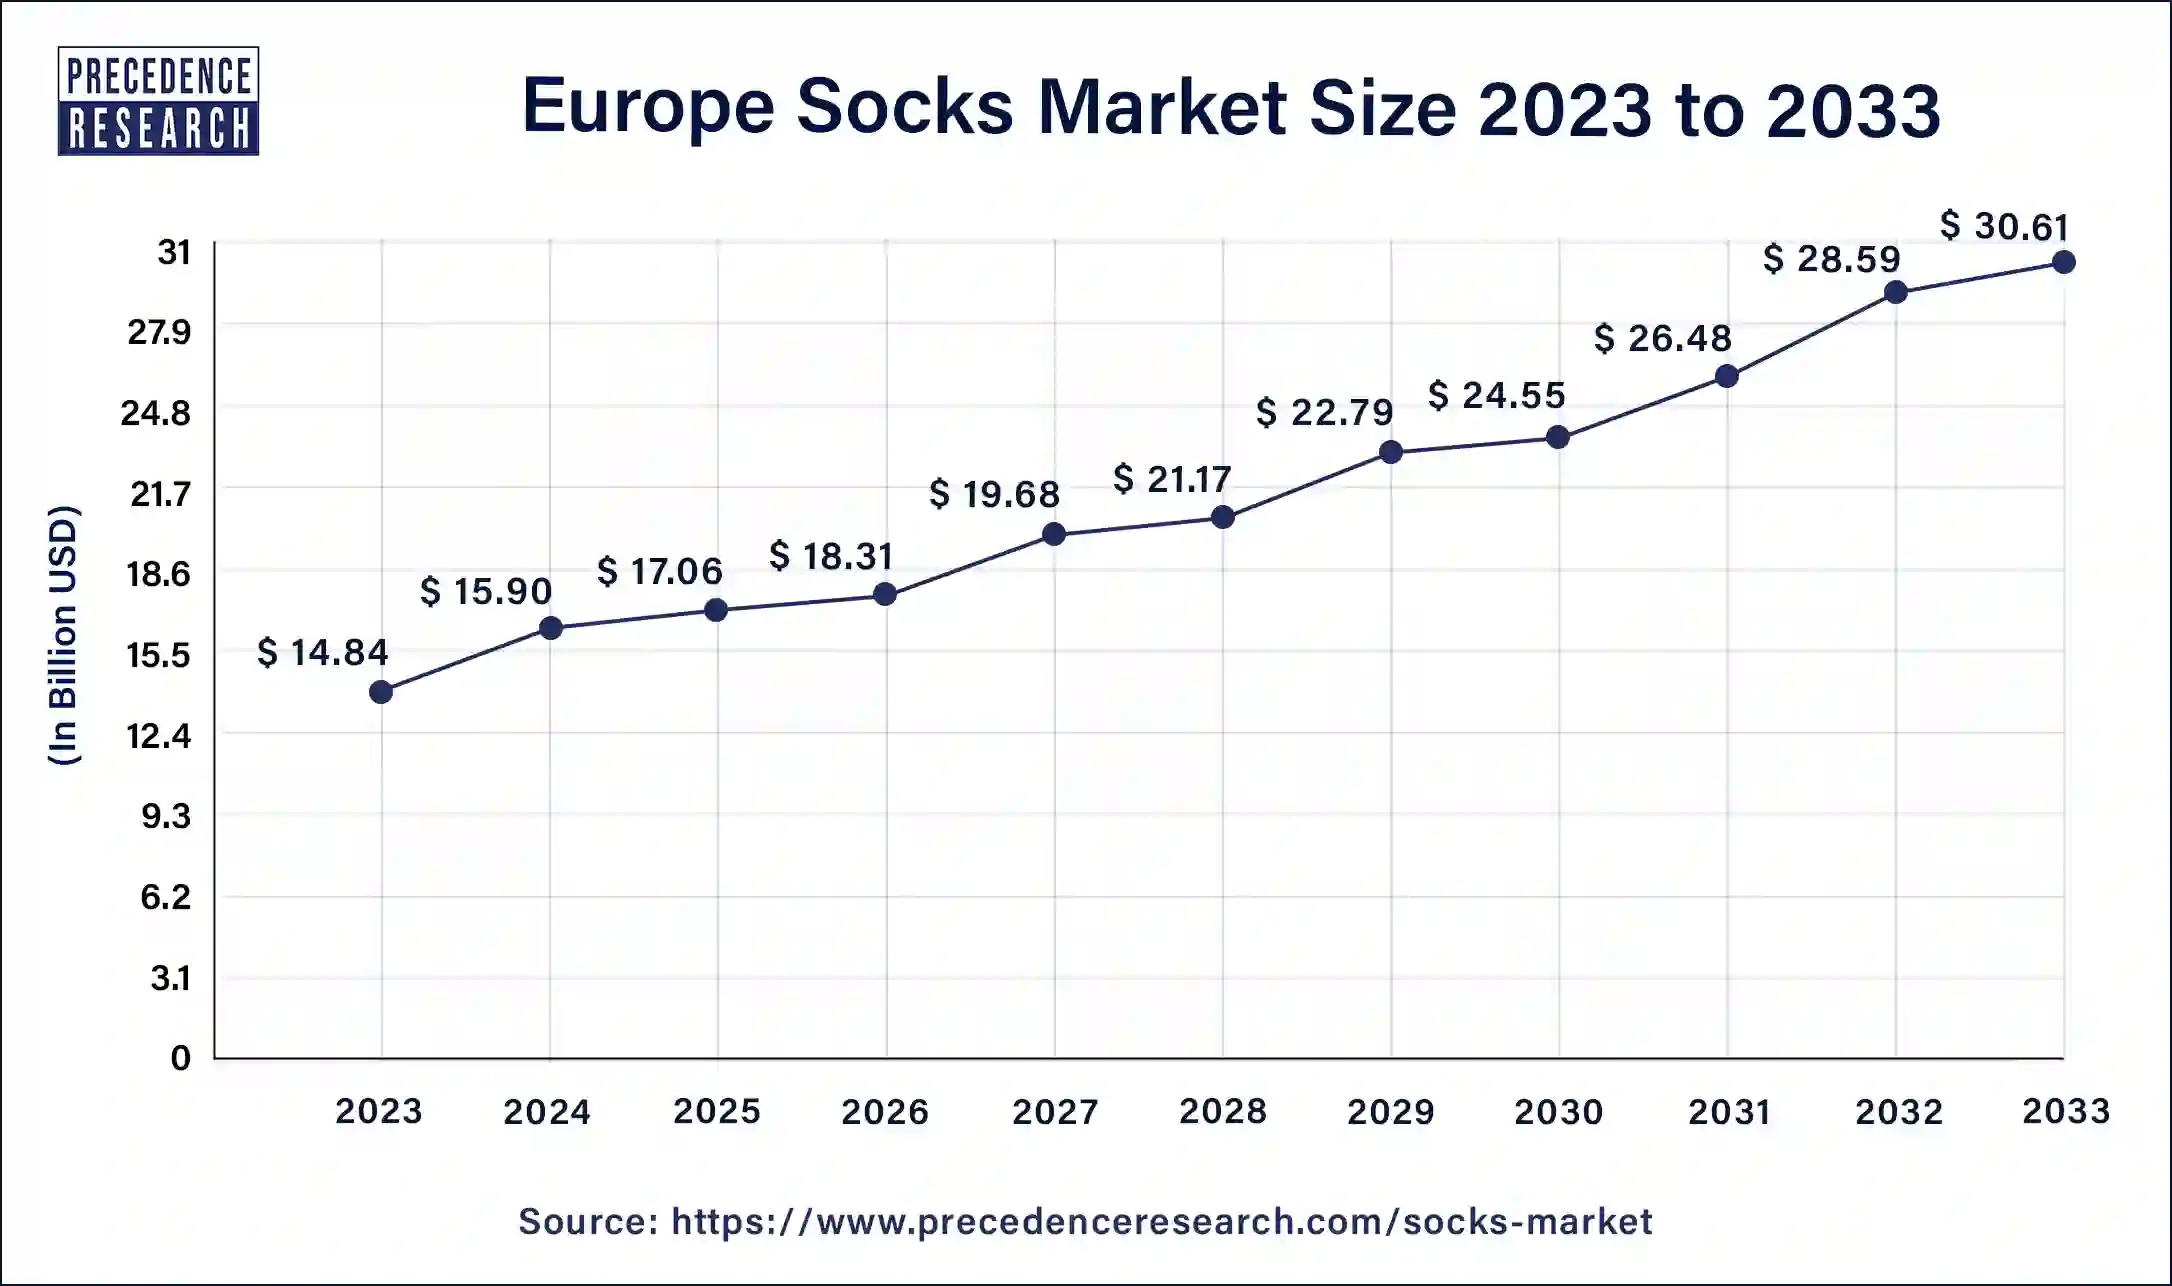 Europe Socks Market Size 2024 to 2033